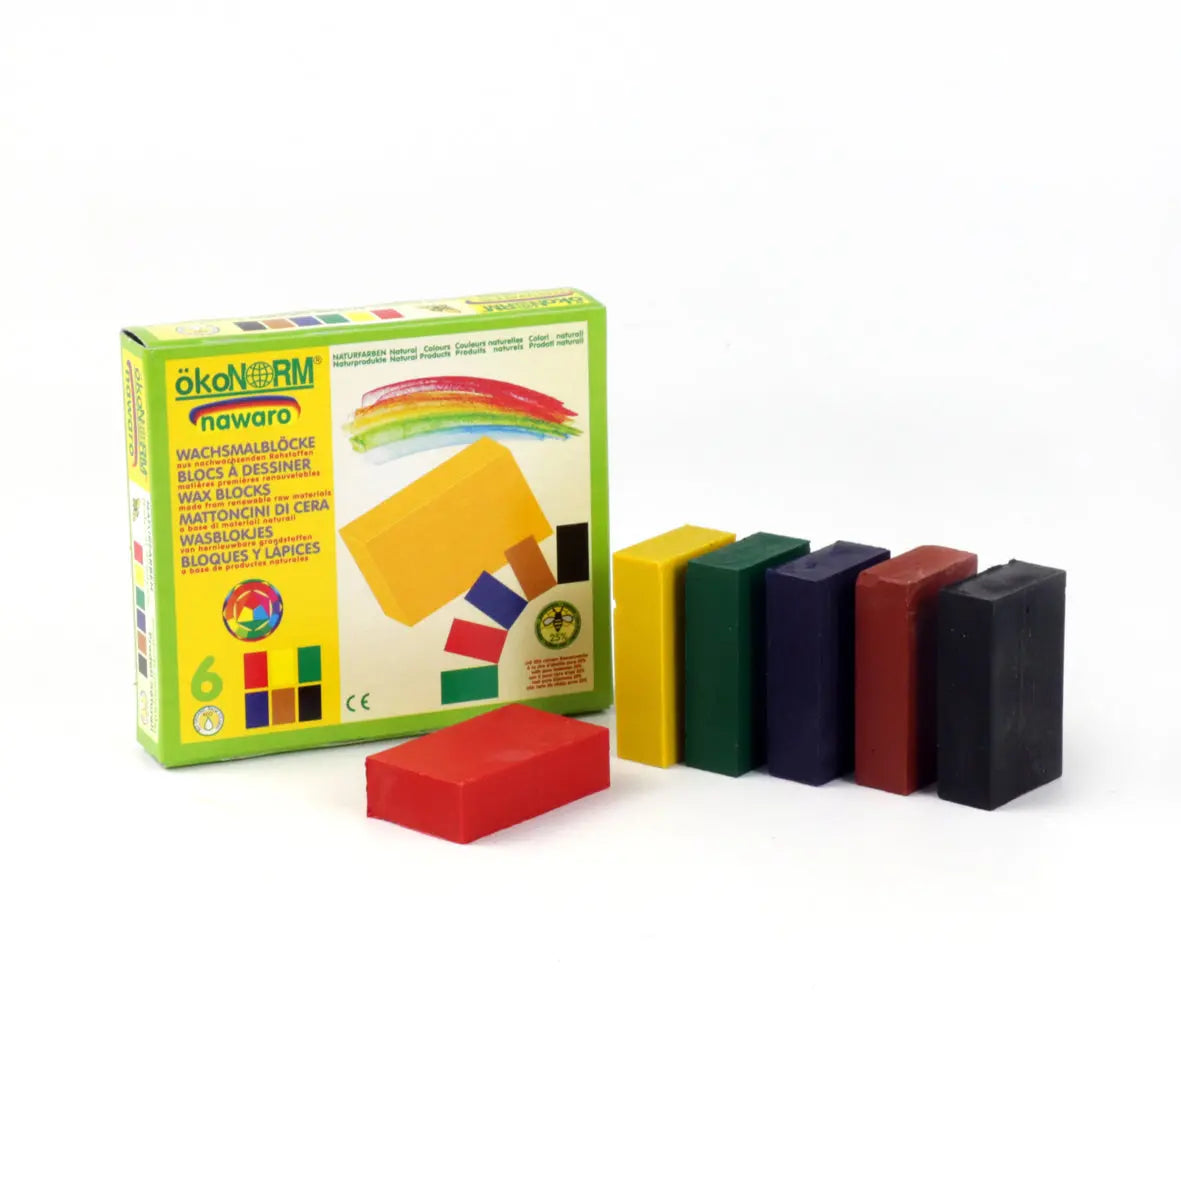 OkoNorm Beeswax crayon blocks